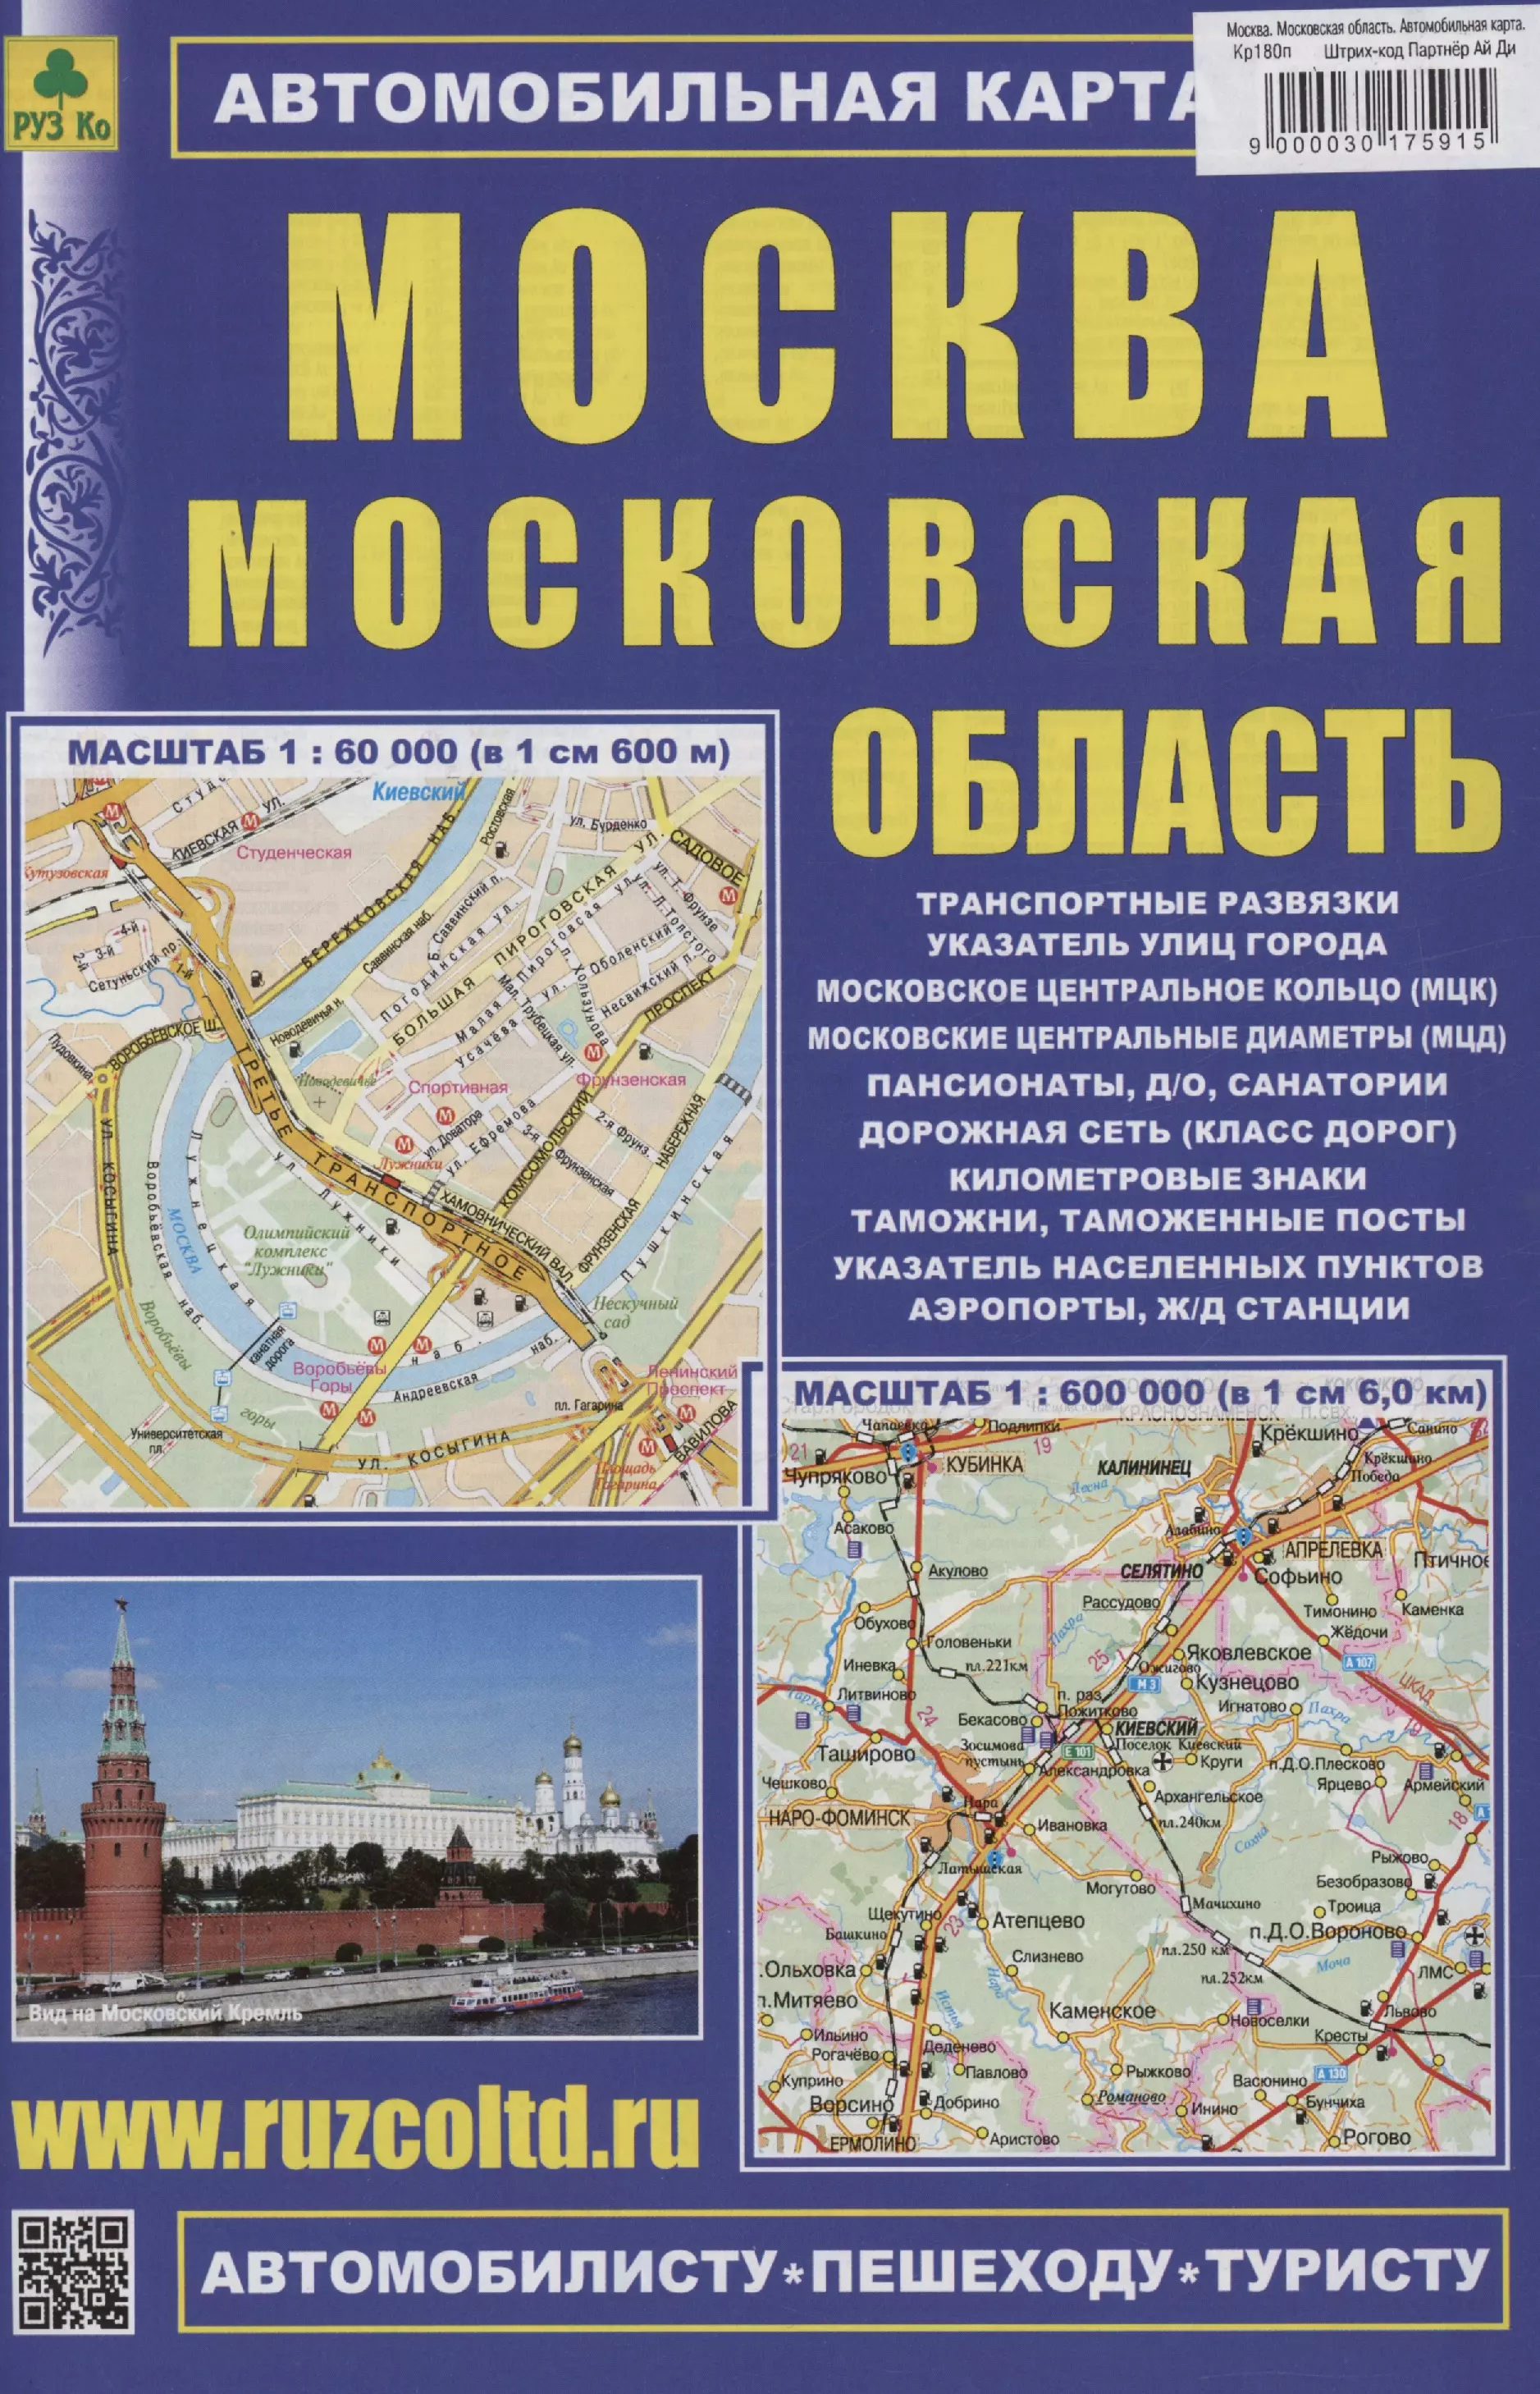 united arab emirates карта 1 1 600 000 Москва. Московская область. Автомобильная карта (М1:60 000/ 1: 600 000)